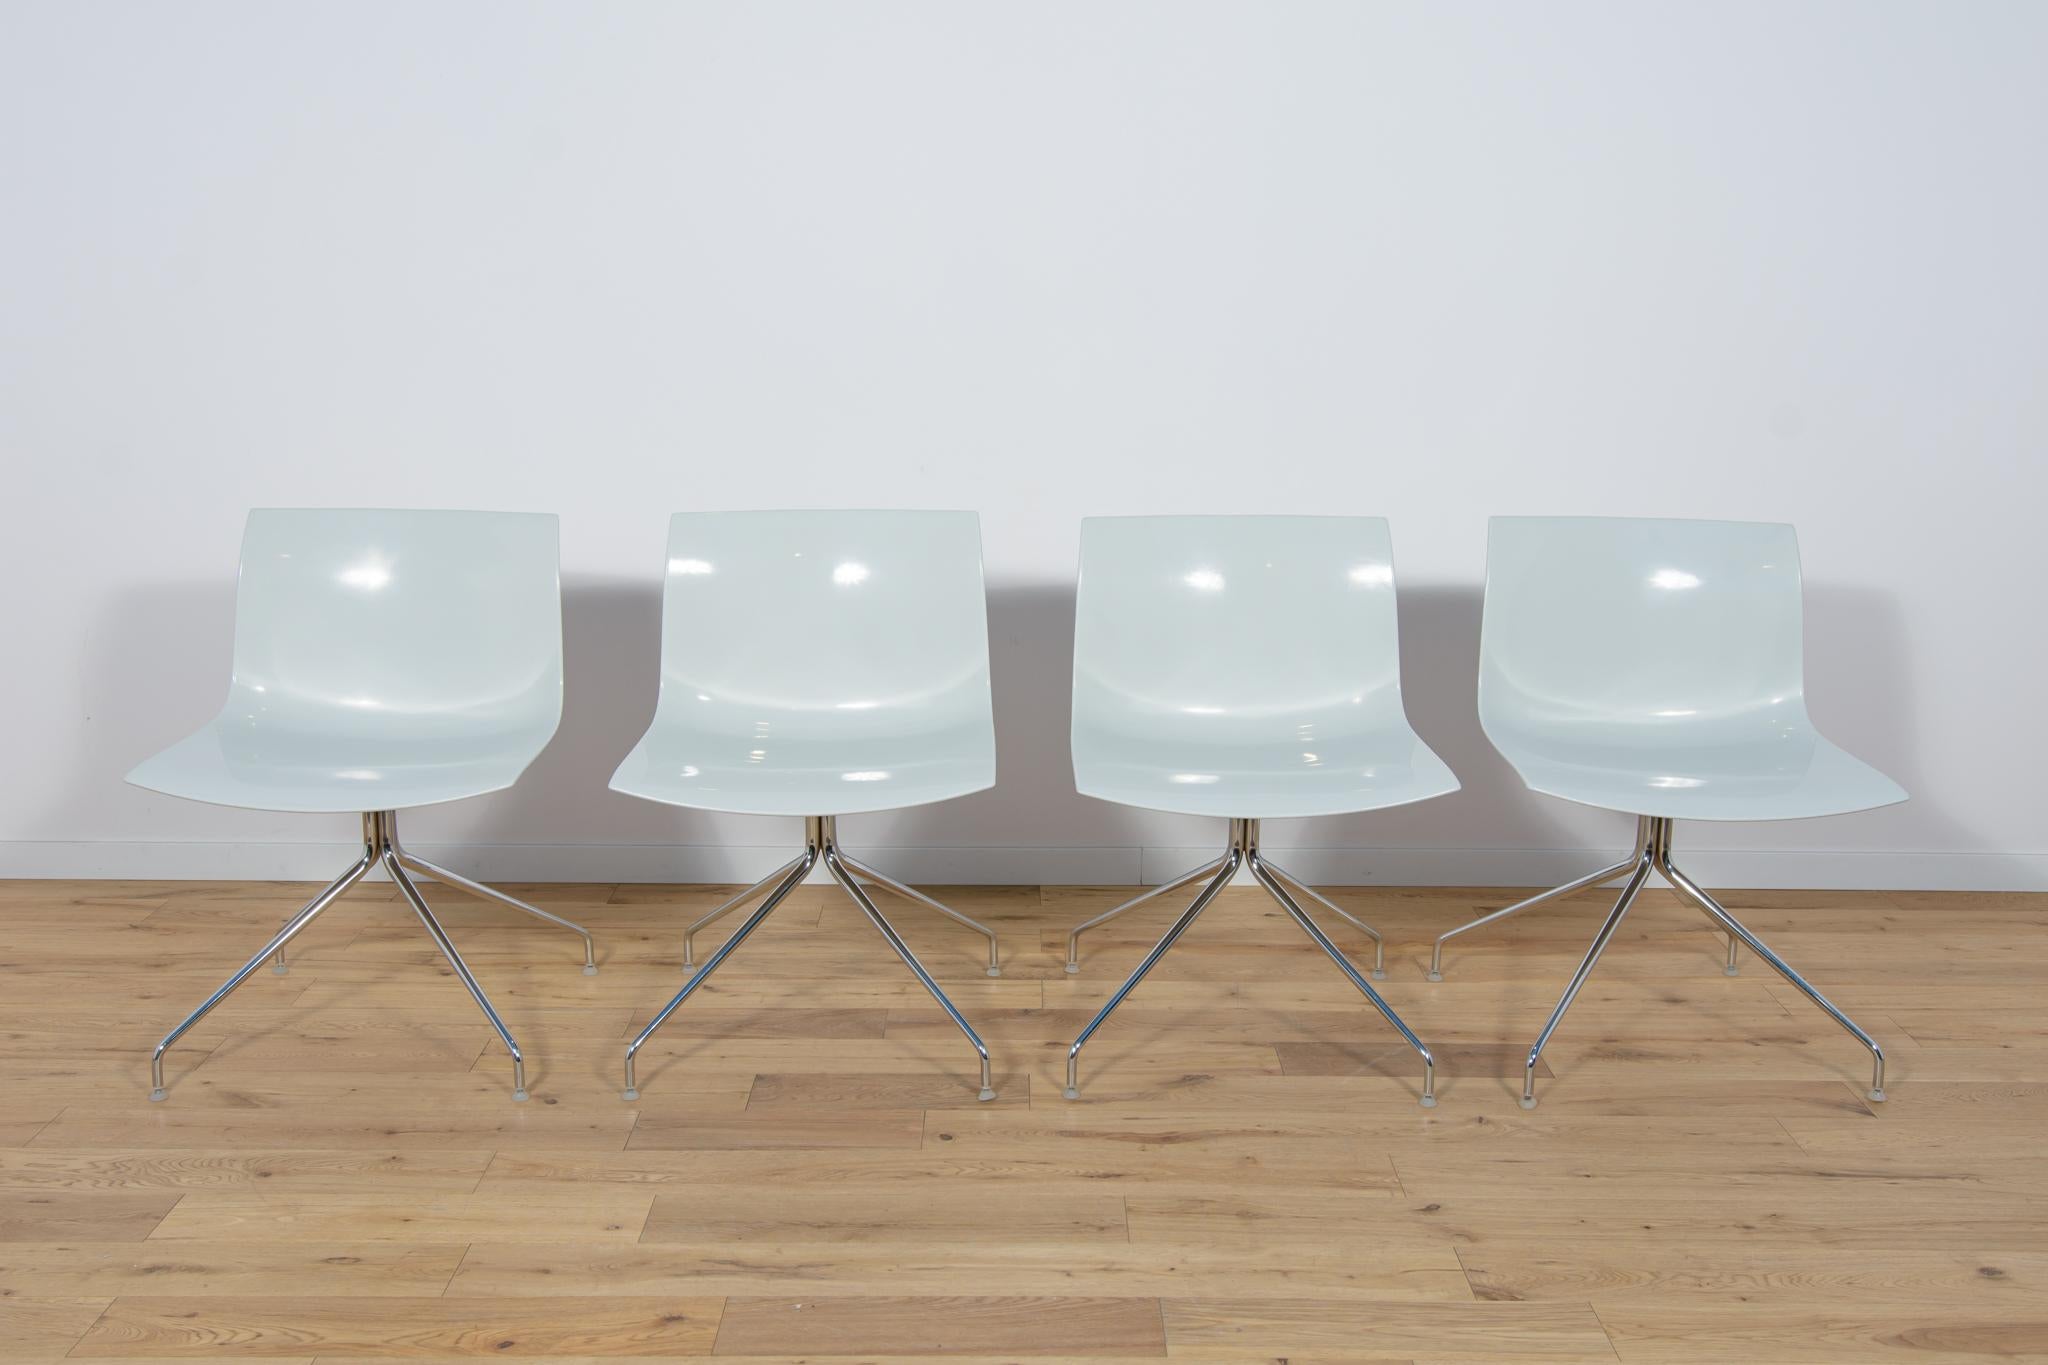 Les chaises ont été conçues par Lievore Altherr Molina et produites par Arper au début du 21e siècle en Italie. Les fauteuils ont des pieds pivotants chromés. Les éléments chromés ont été polis. Sièges ergonomiques en plastique solide. Les chaises